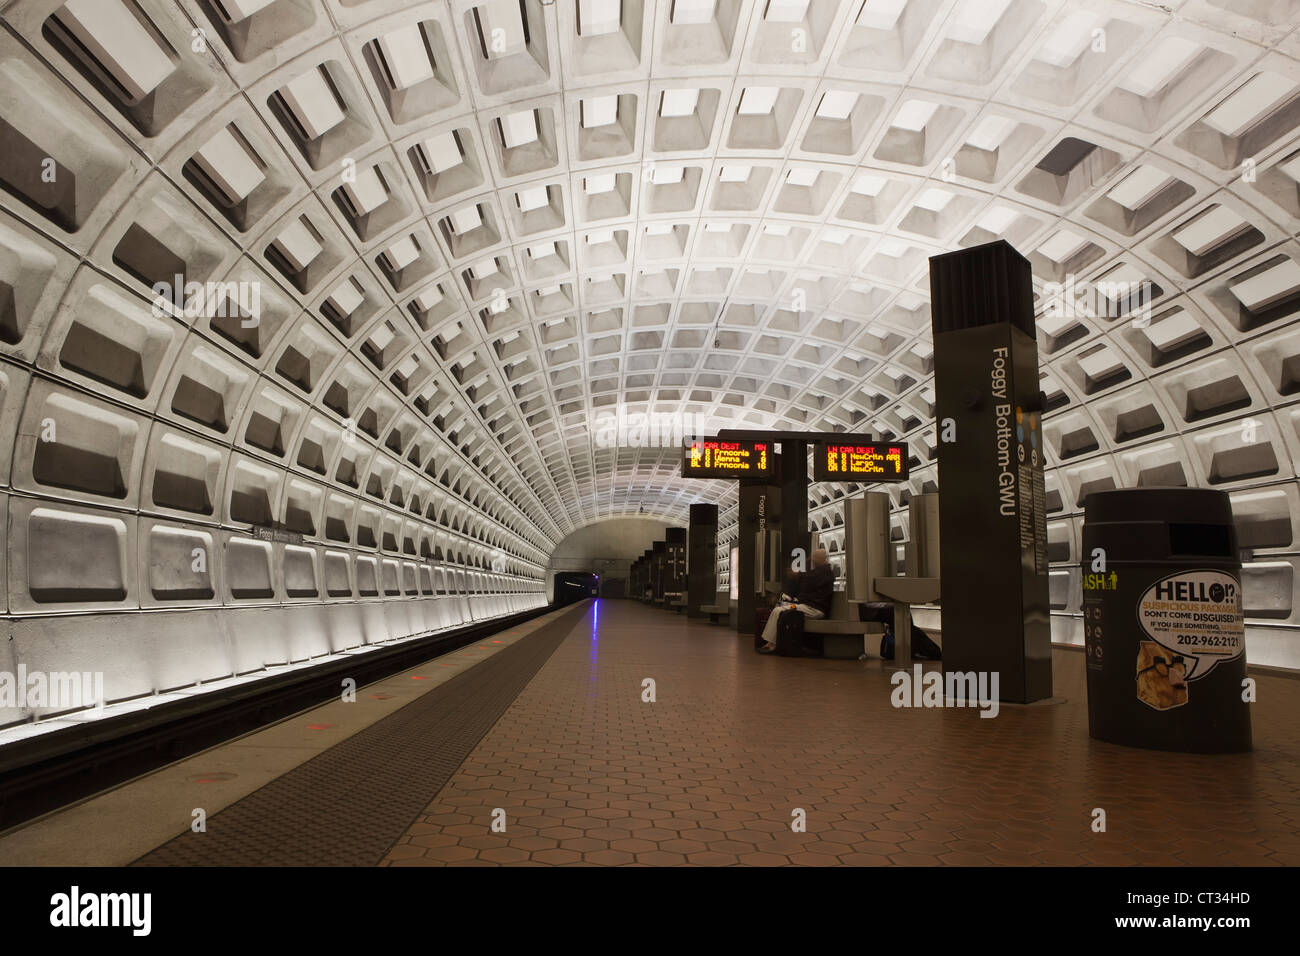 La station de métro Foggy Bottom plate-forme, une partie de la système de métro de Washington D.C. Banque D'Images